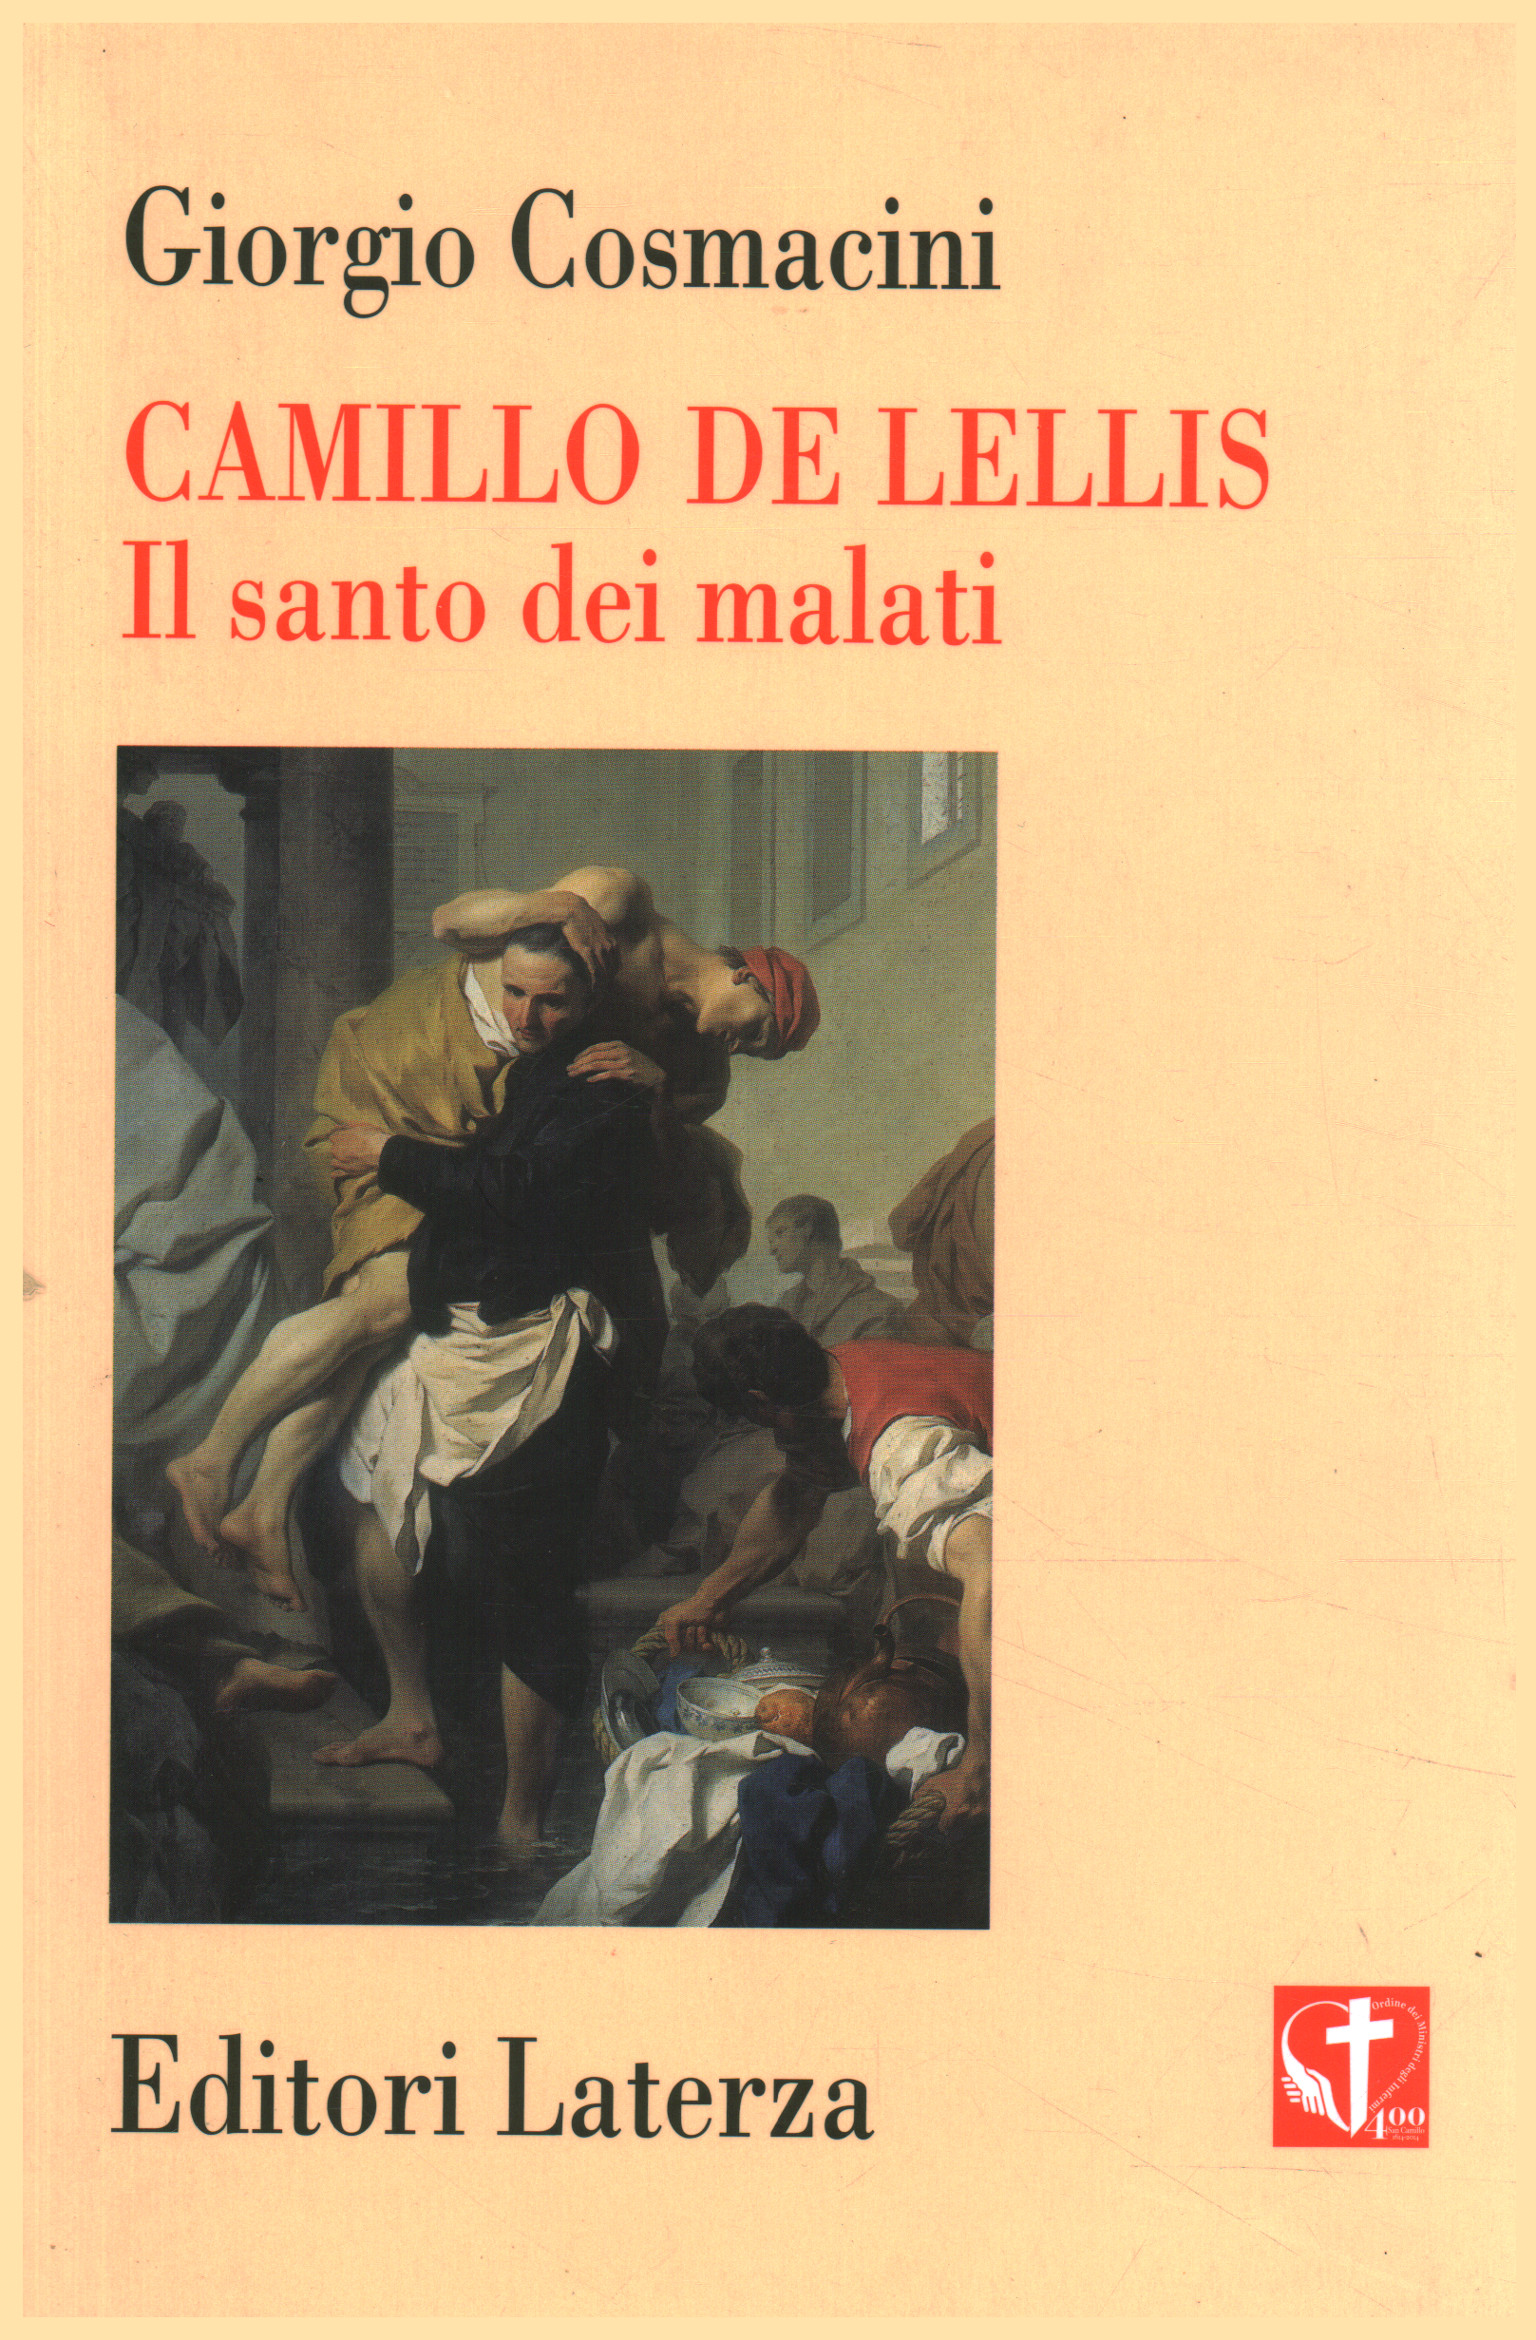 Camillo de Lellis, Giorgio Cosmacini